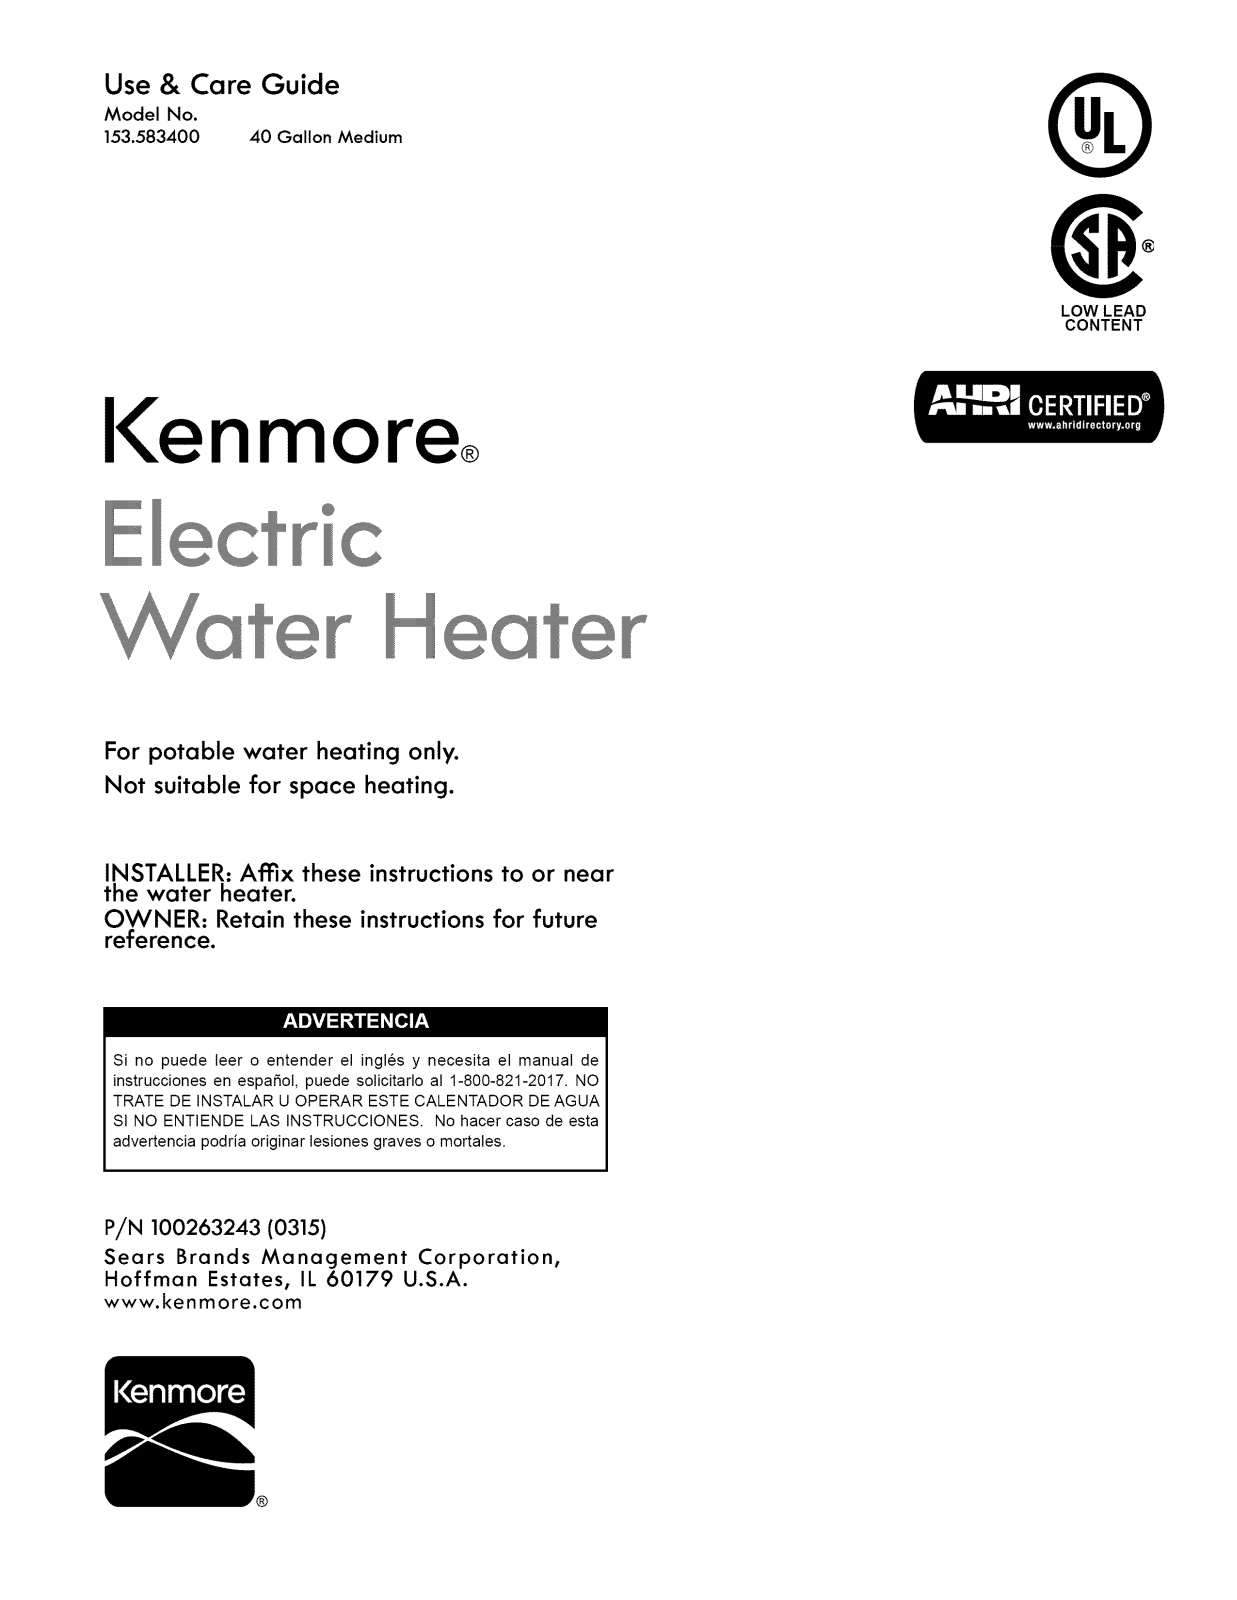 Kenmore 153583400 Owner’s Manual